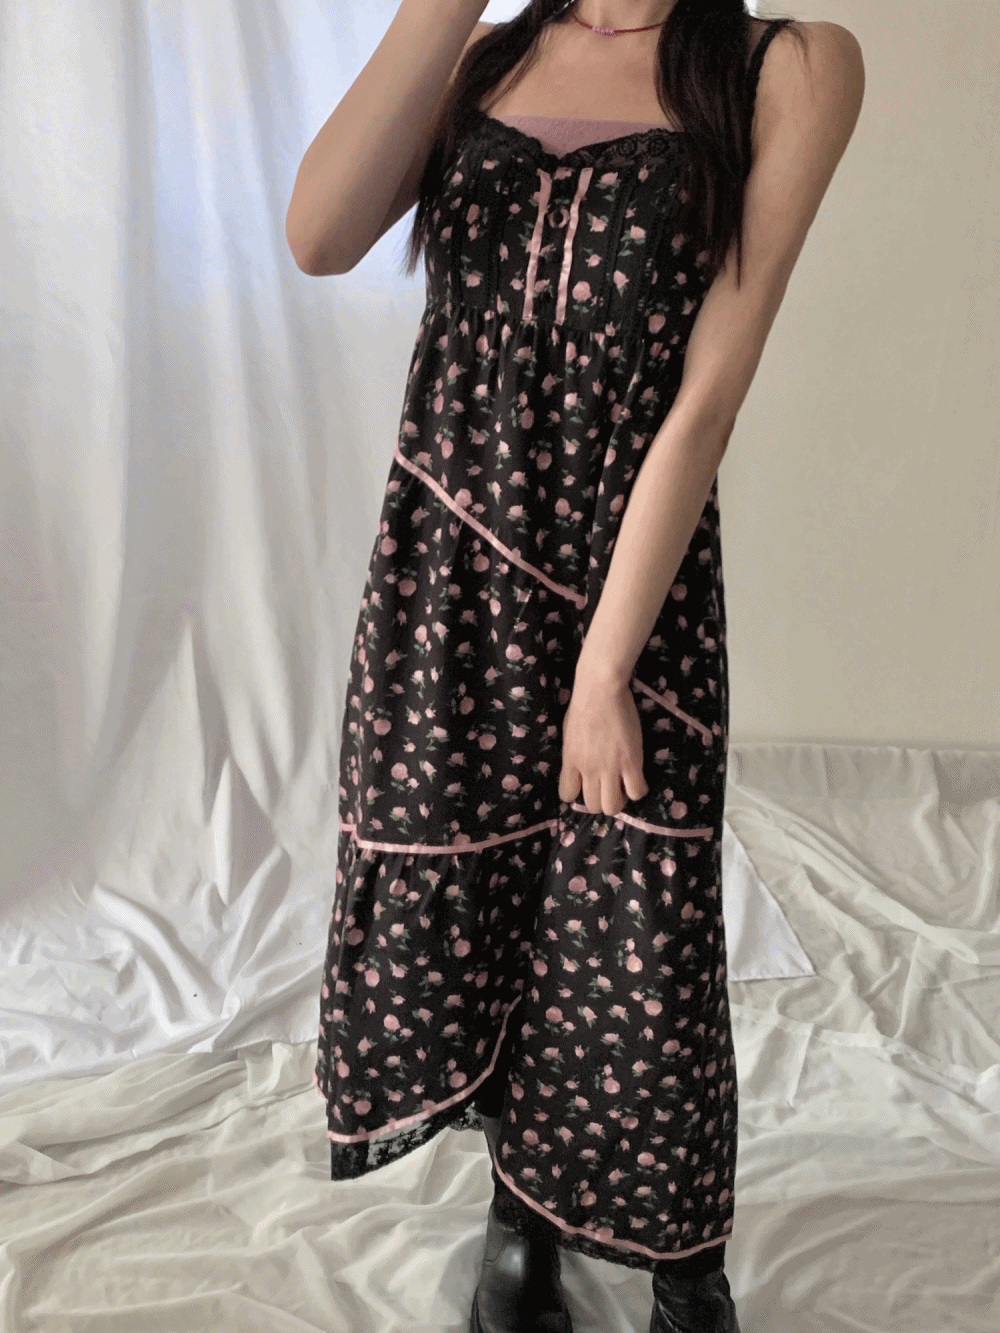 [Dress] Mon Cherie Lace Bustier Dress / 3 colors